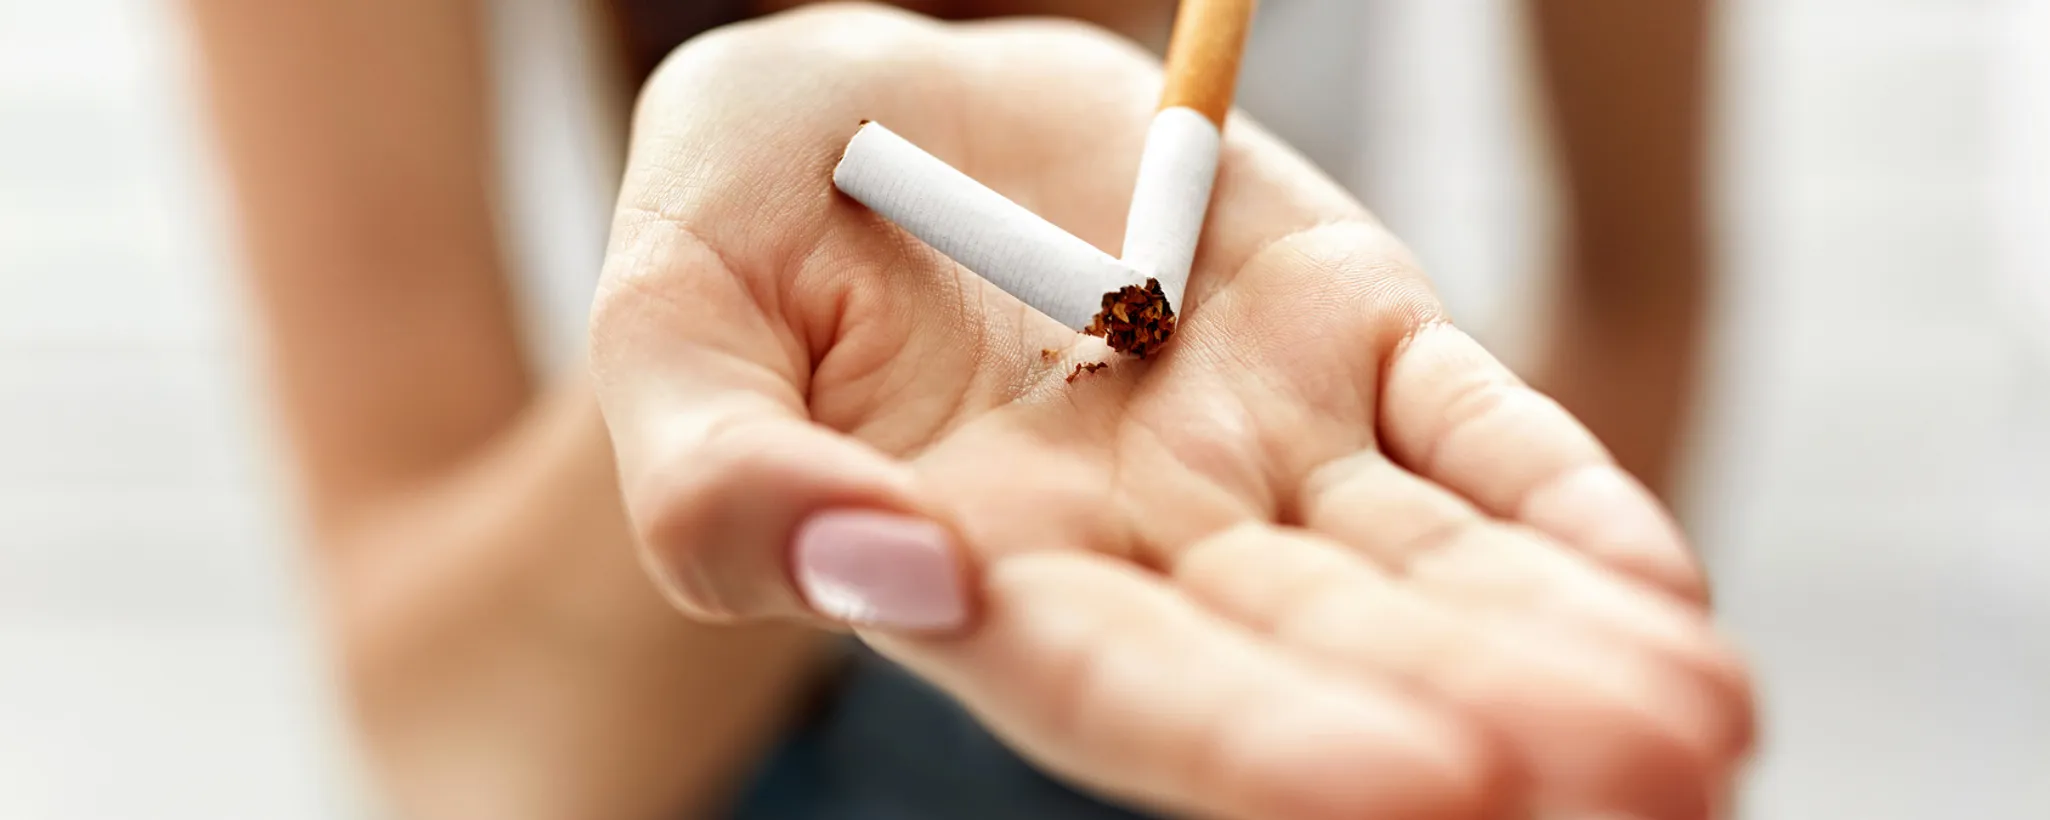 Mit dem Rauchen aufhören - Tipps & Tricks